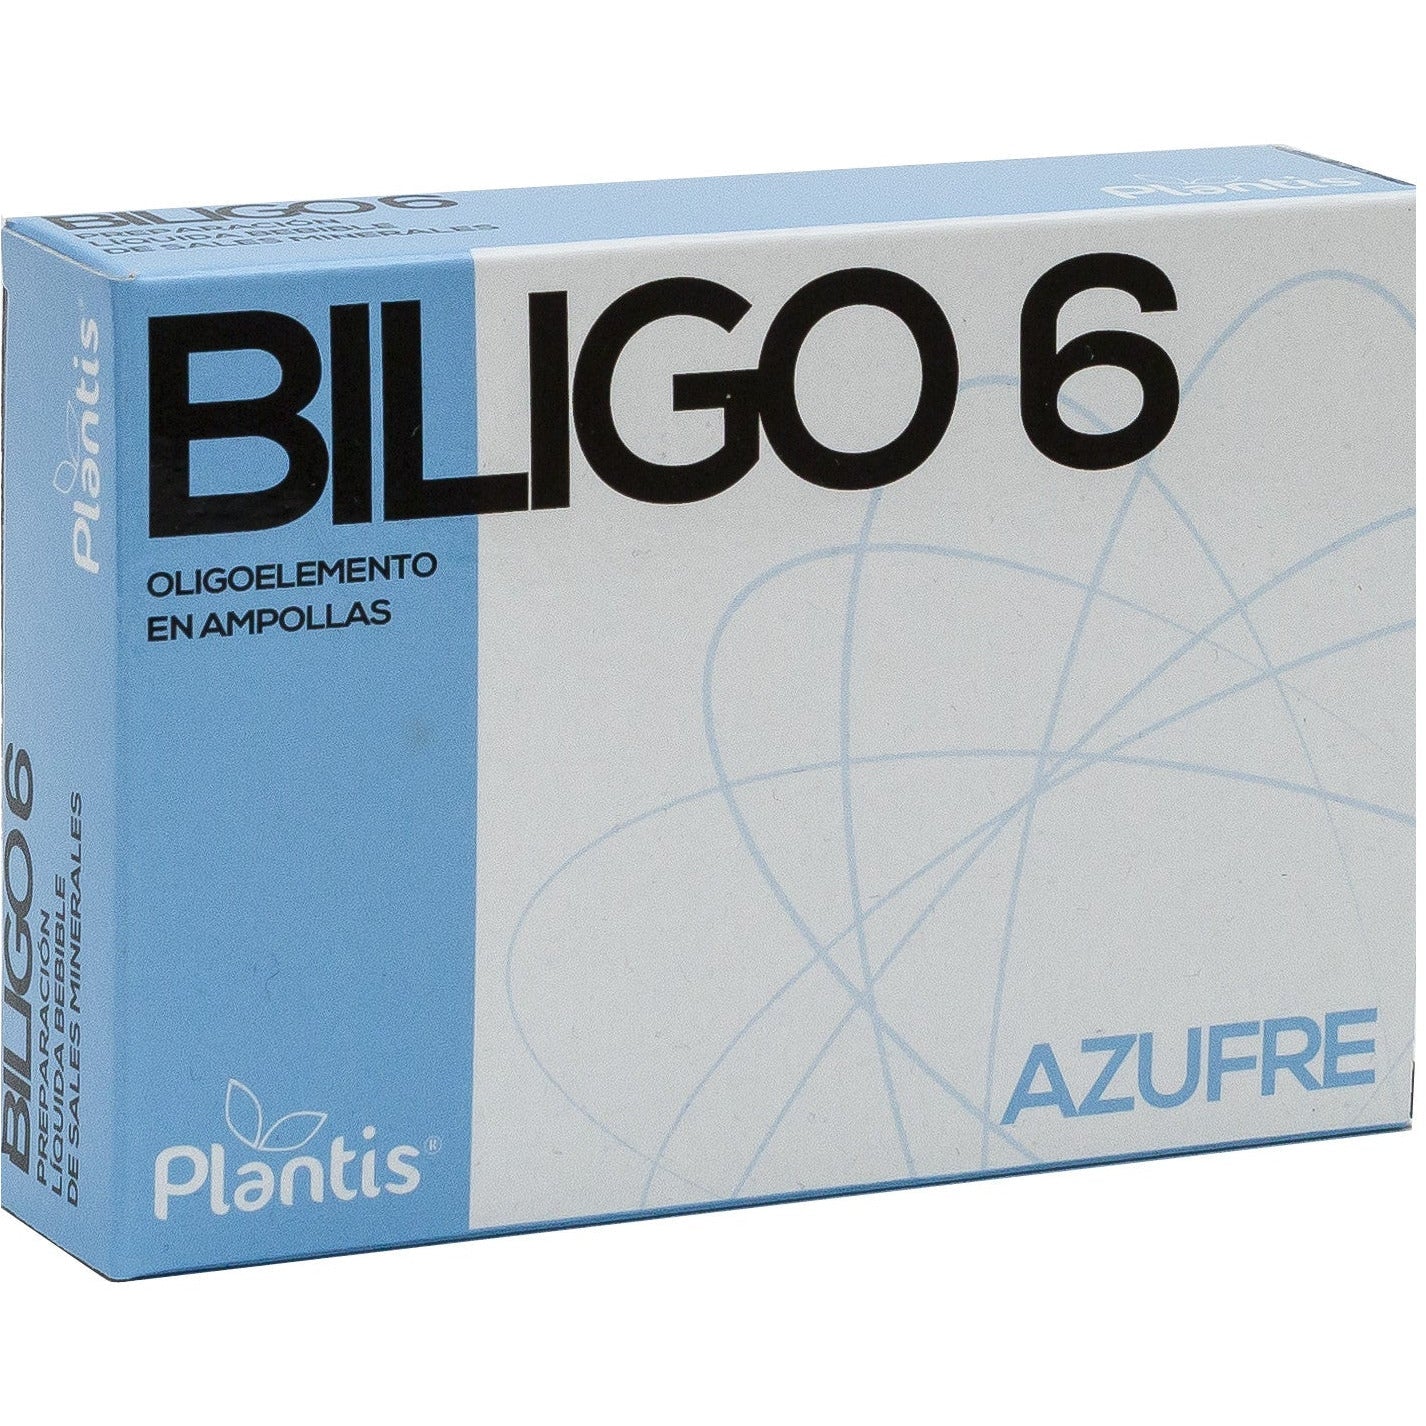 Biligo-6 20 ampollas | Artesania Agricola - Dietetica Ferrer